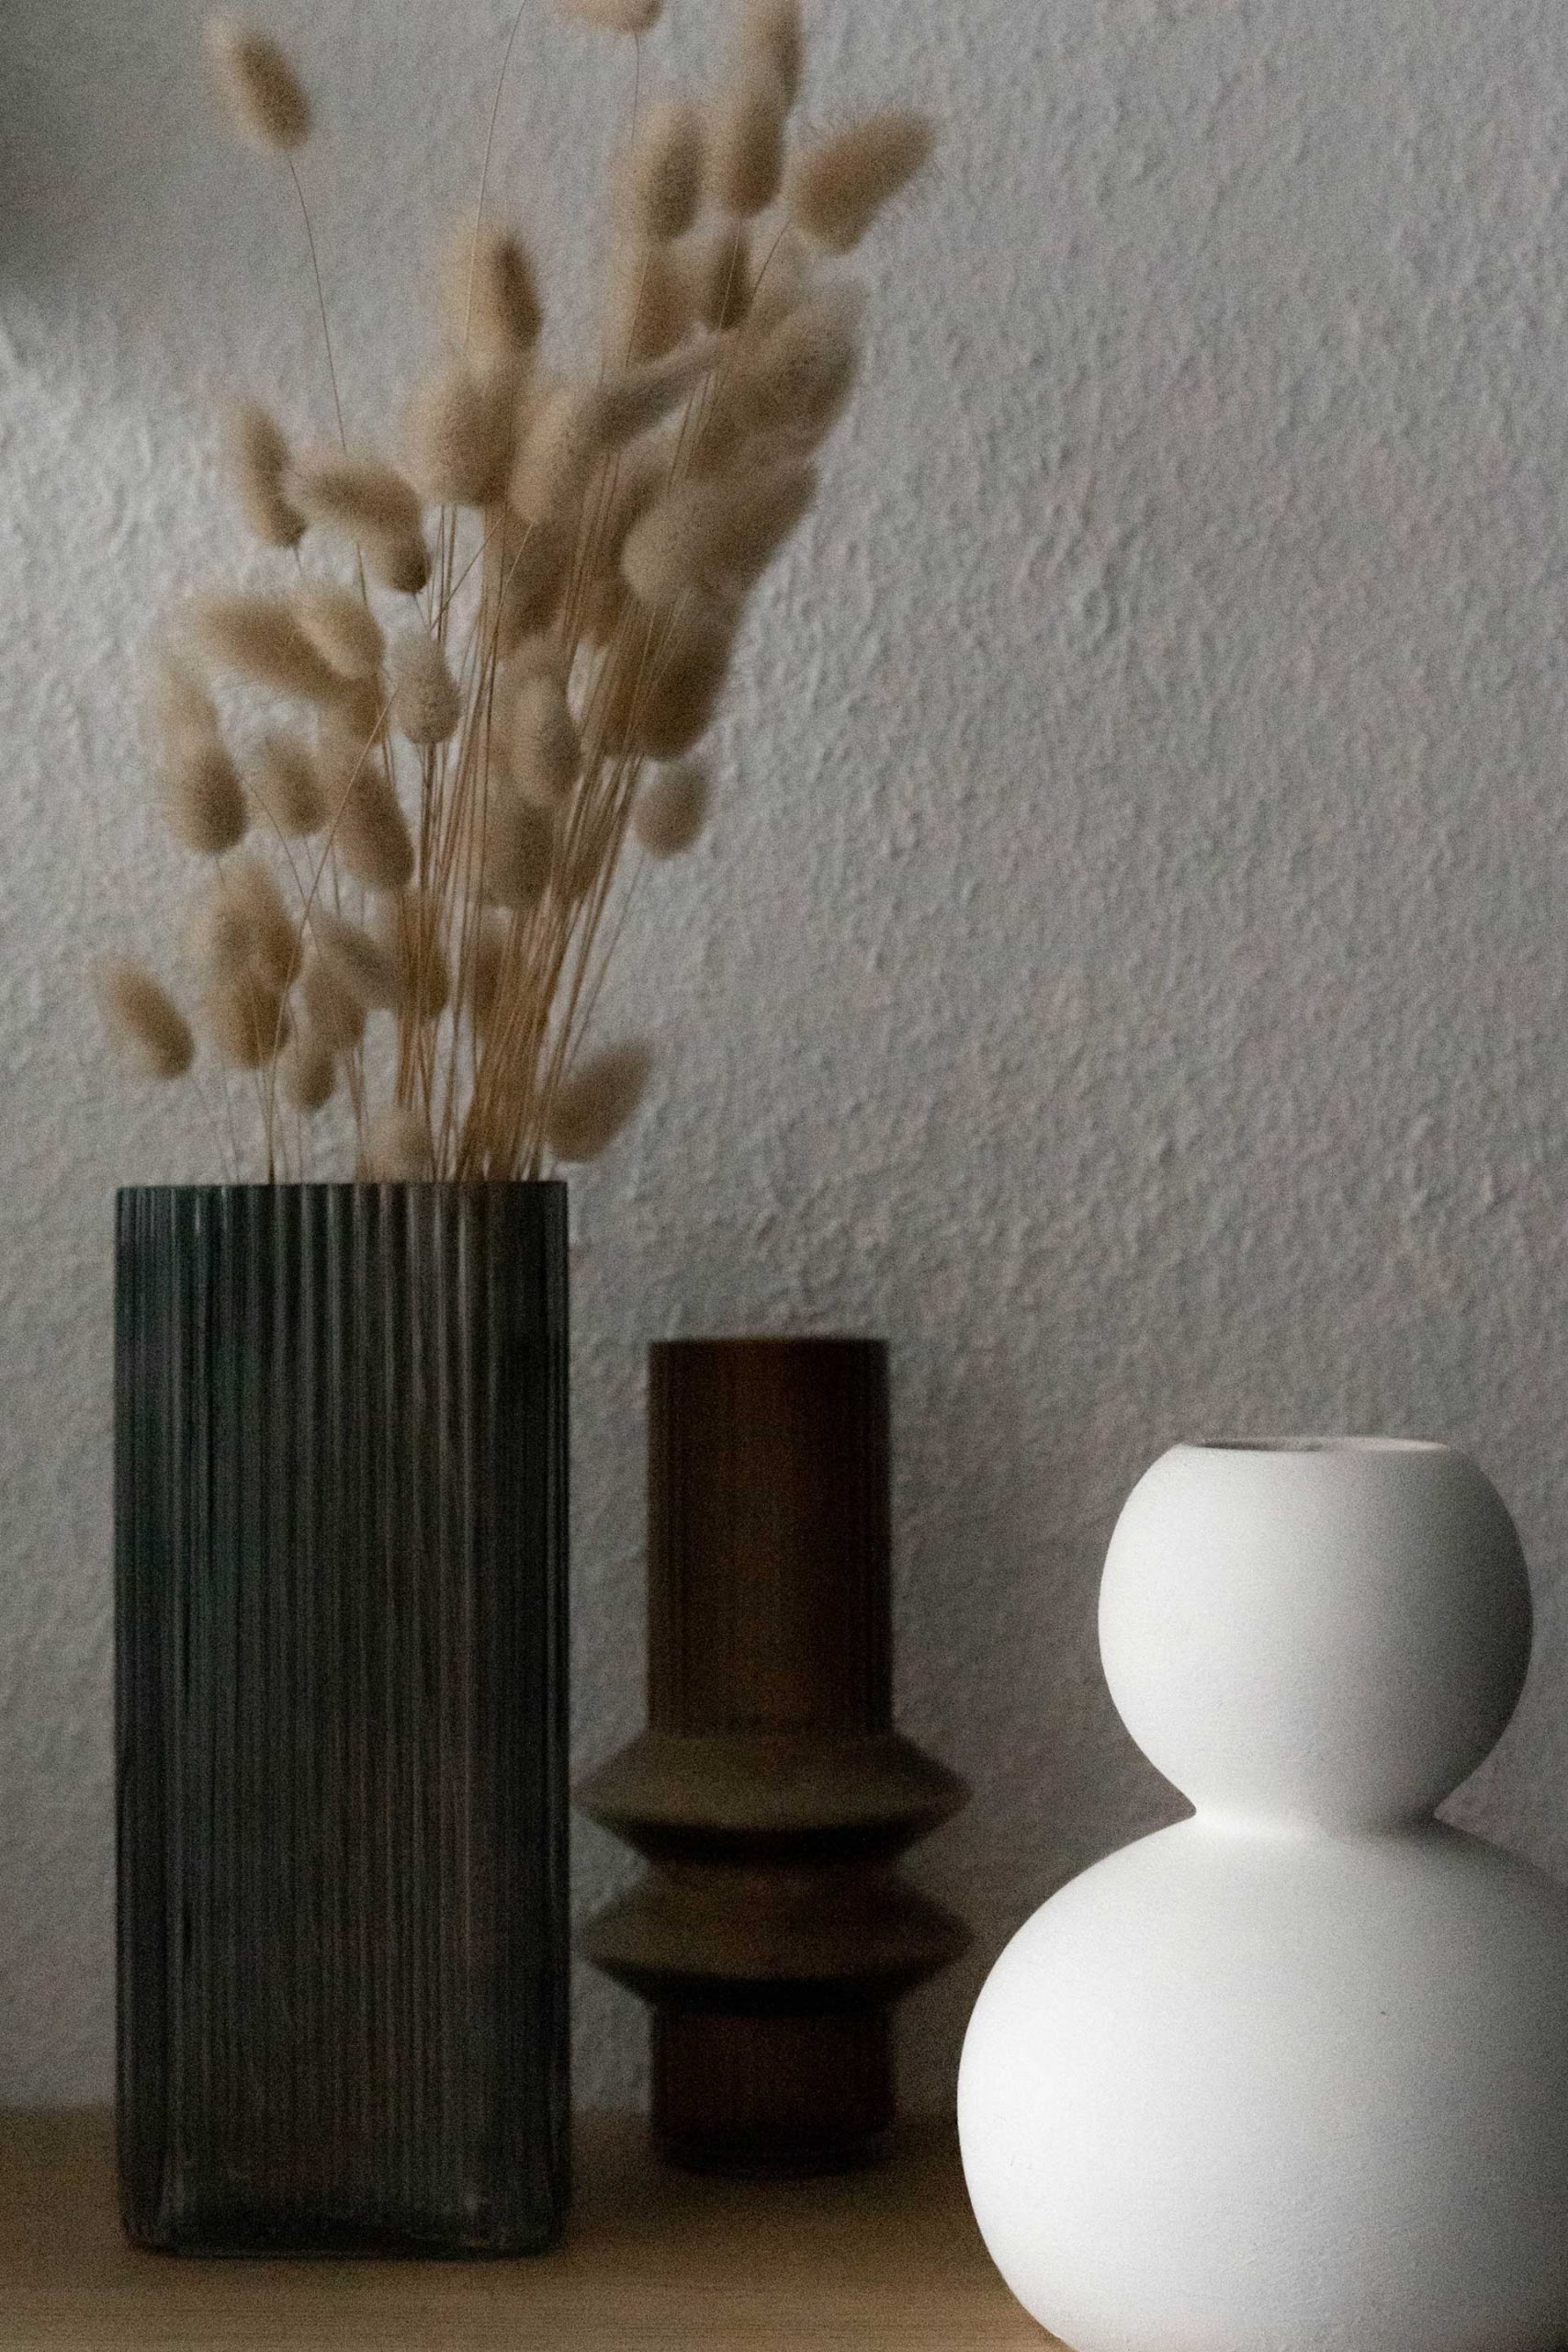 In diesem Artikel geht es darum, wie du Vasen zu Hause am besten dekorierst. Es ist wichtig, dass deine Vasen gut dekoriert sind, denn sie können ein Statement für deinen Wohnraum sein.